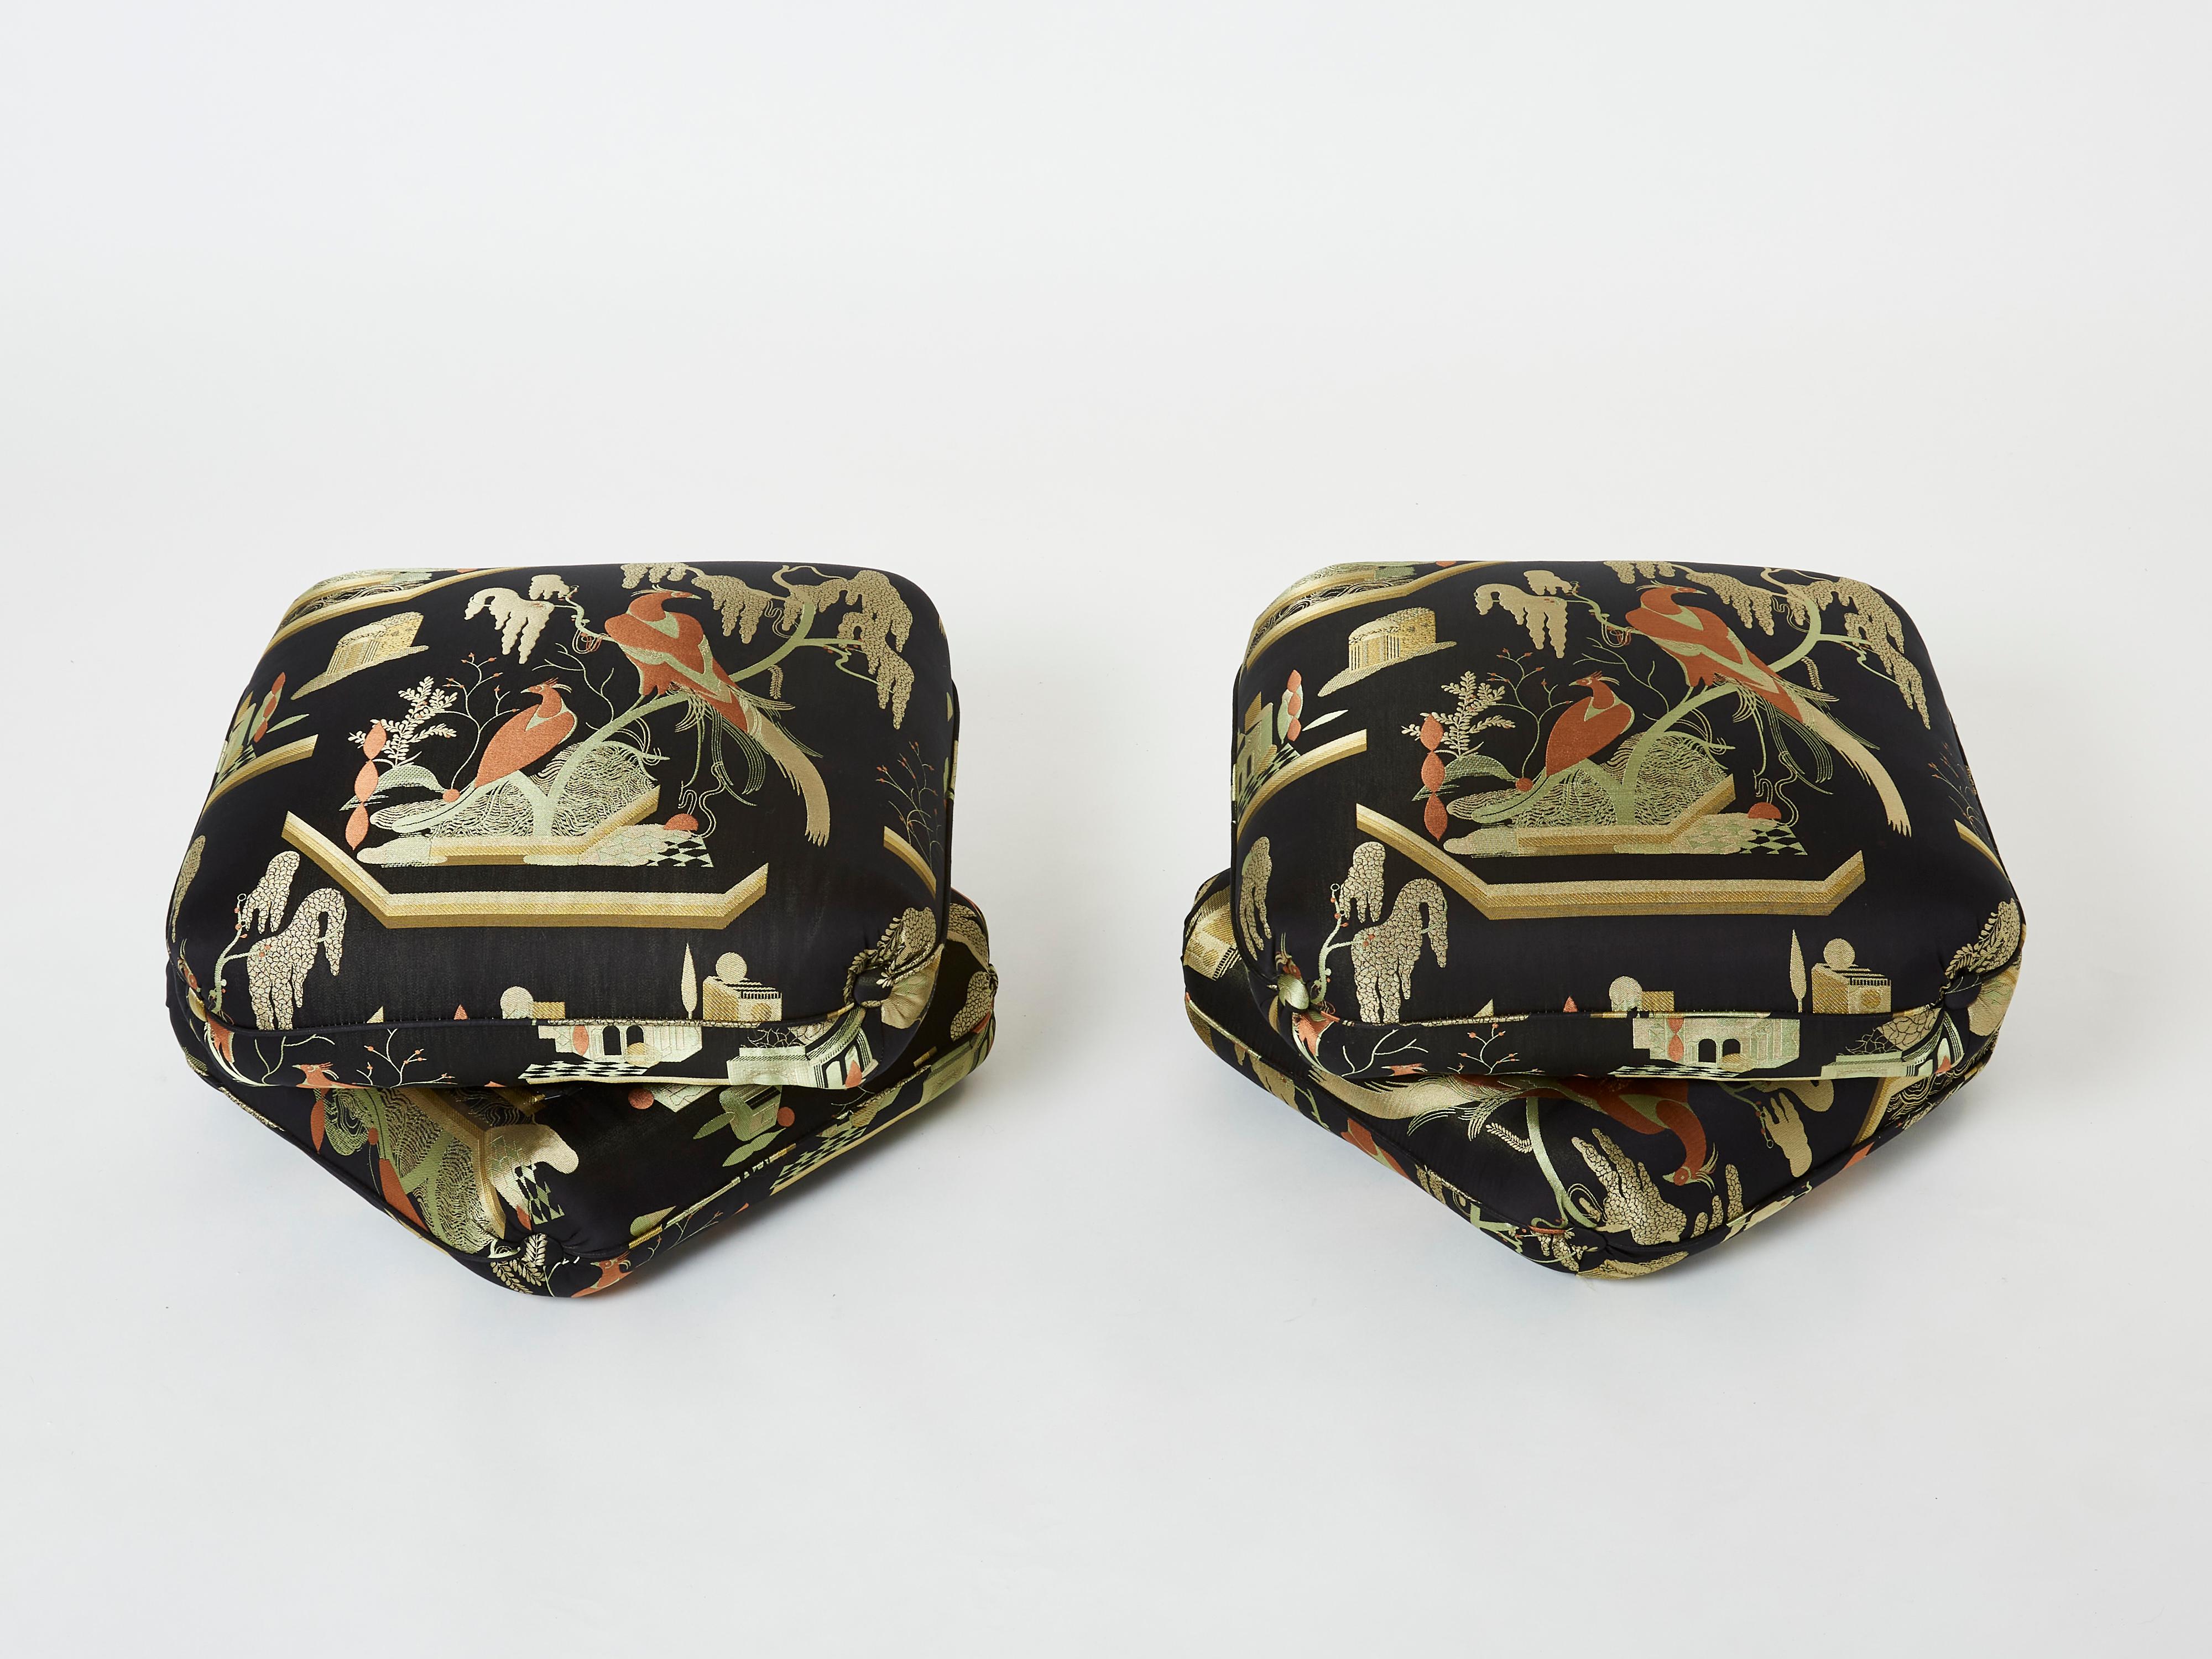 Belle paire de poufs ou tabourets du designer français Jacques Charpentier pour la Maison Jansen, conçus dans les années 1970. Les tabourets ottomans sont constitués de deux grands coussins reliés entre eux. Elles ont été nouvellement tapissées d'un